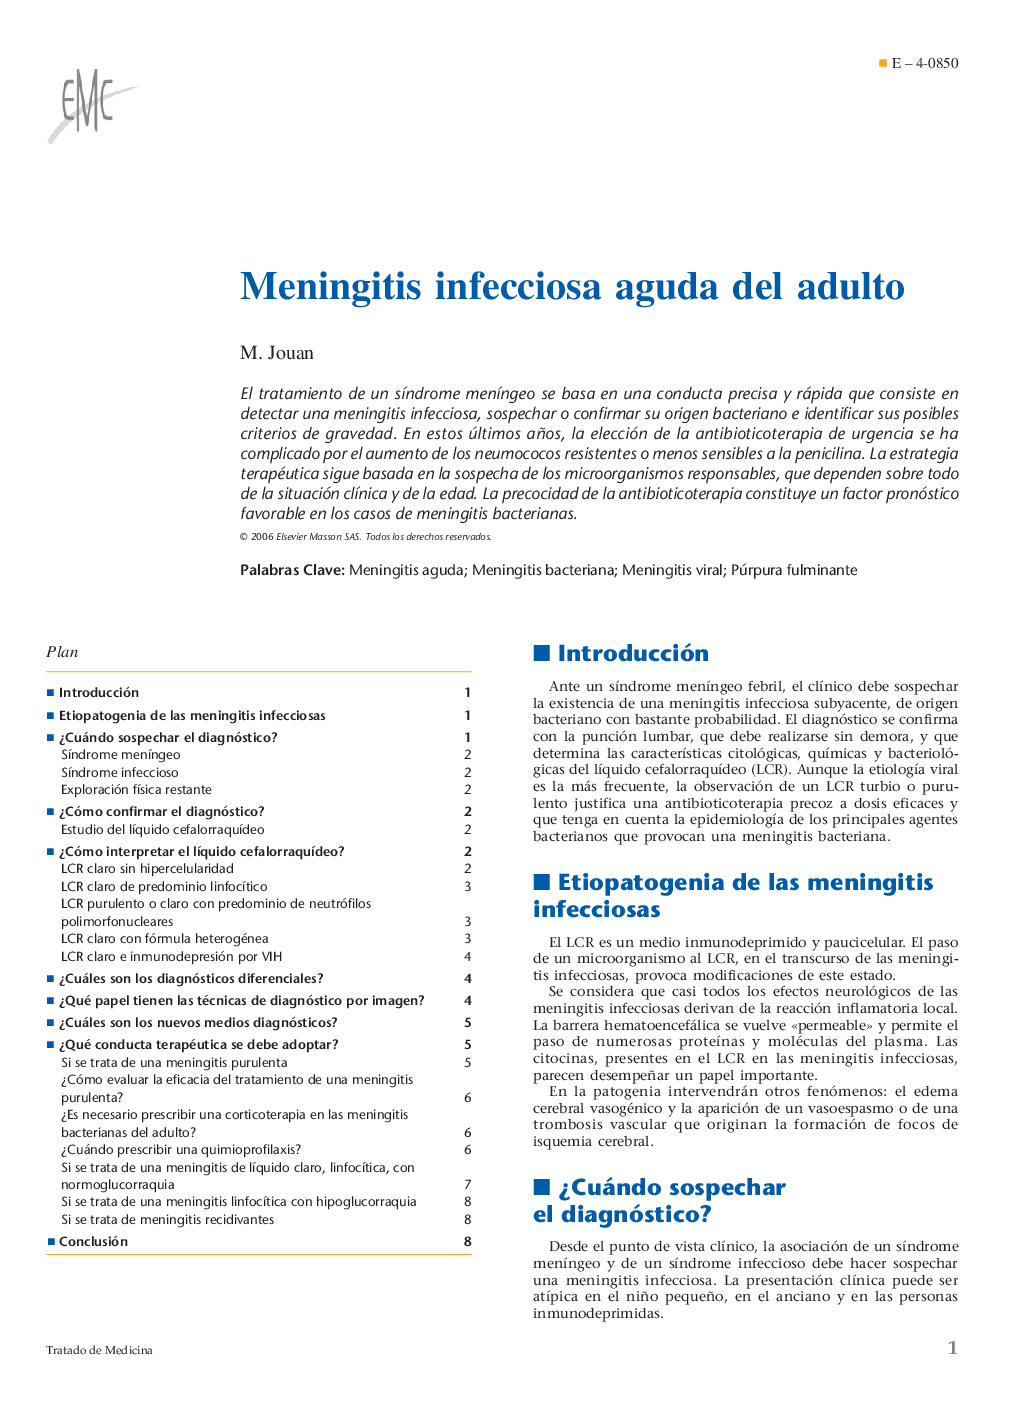 Meningitis infecciosa aguda del adulto